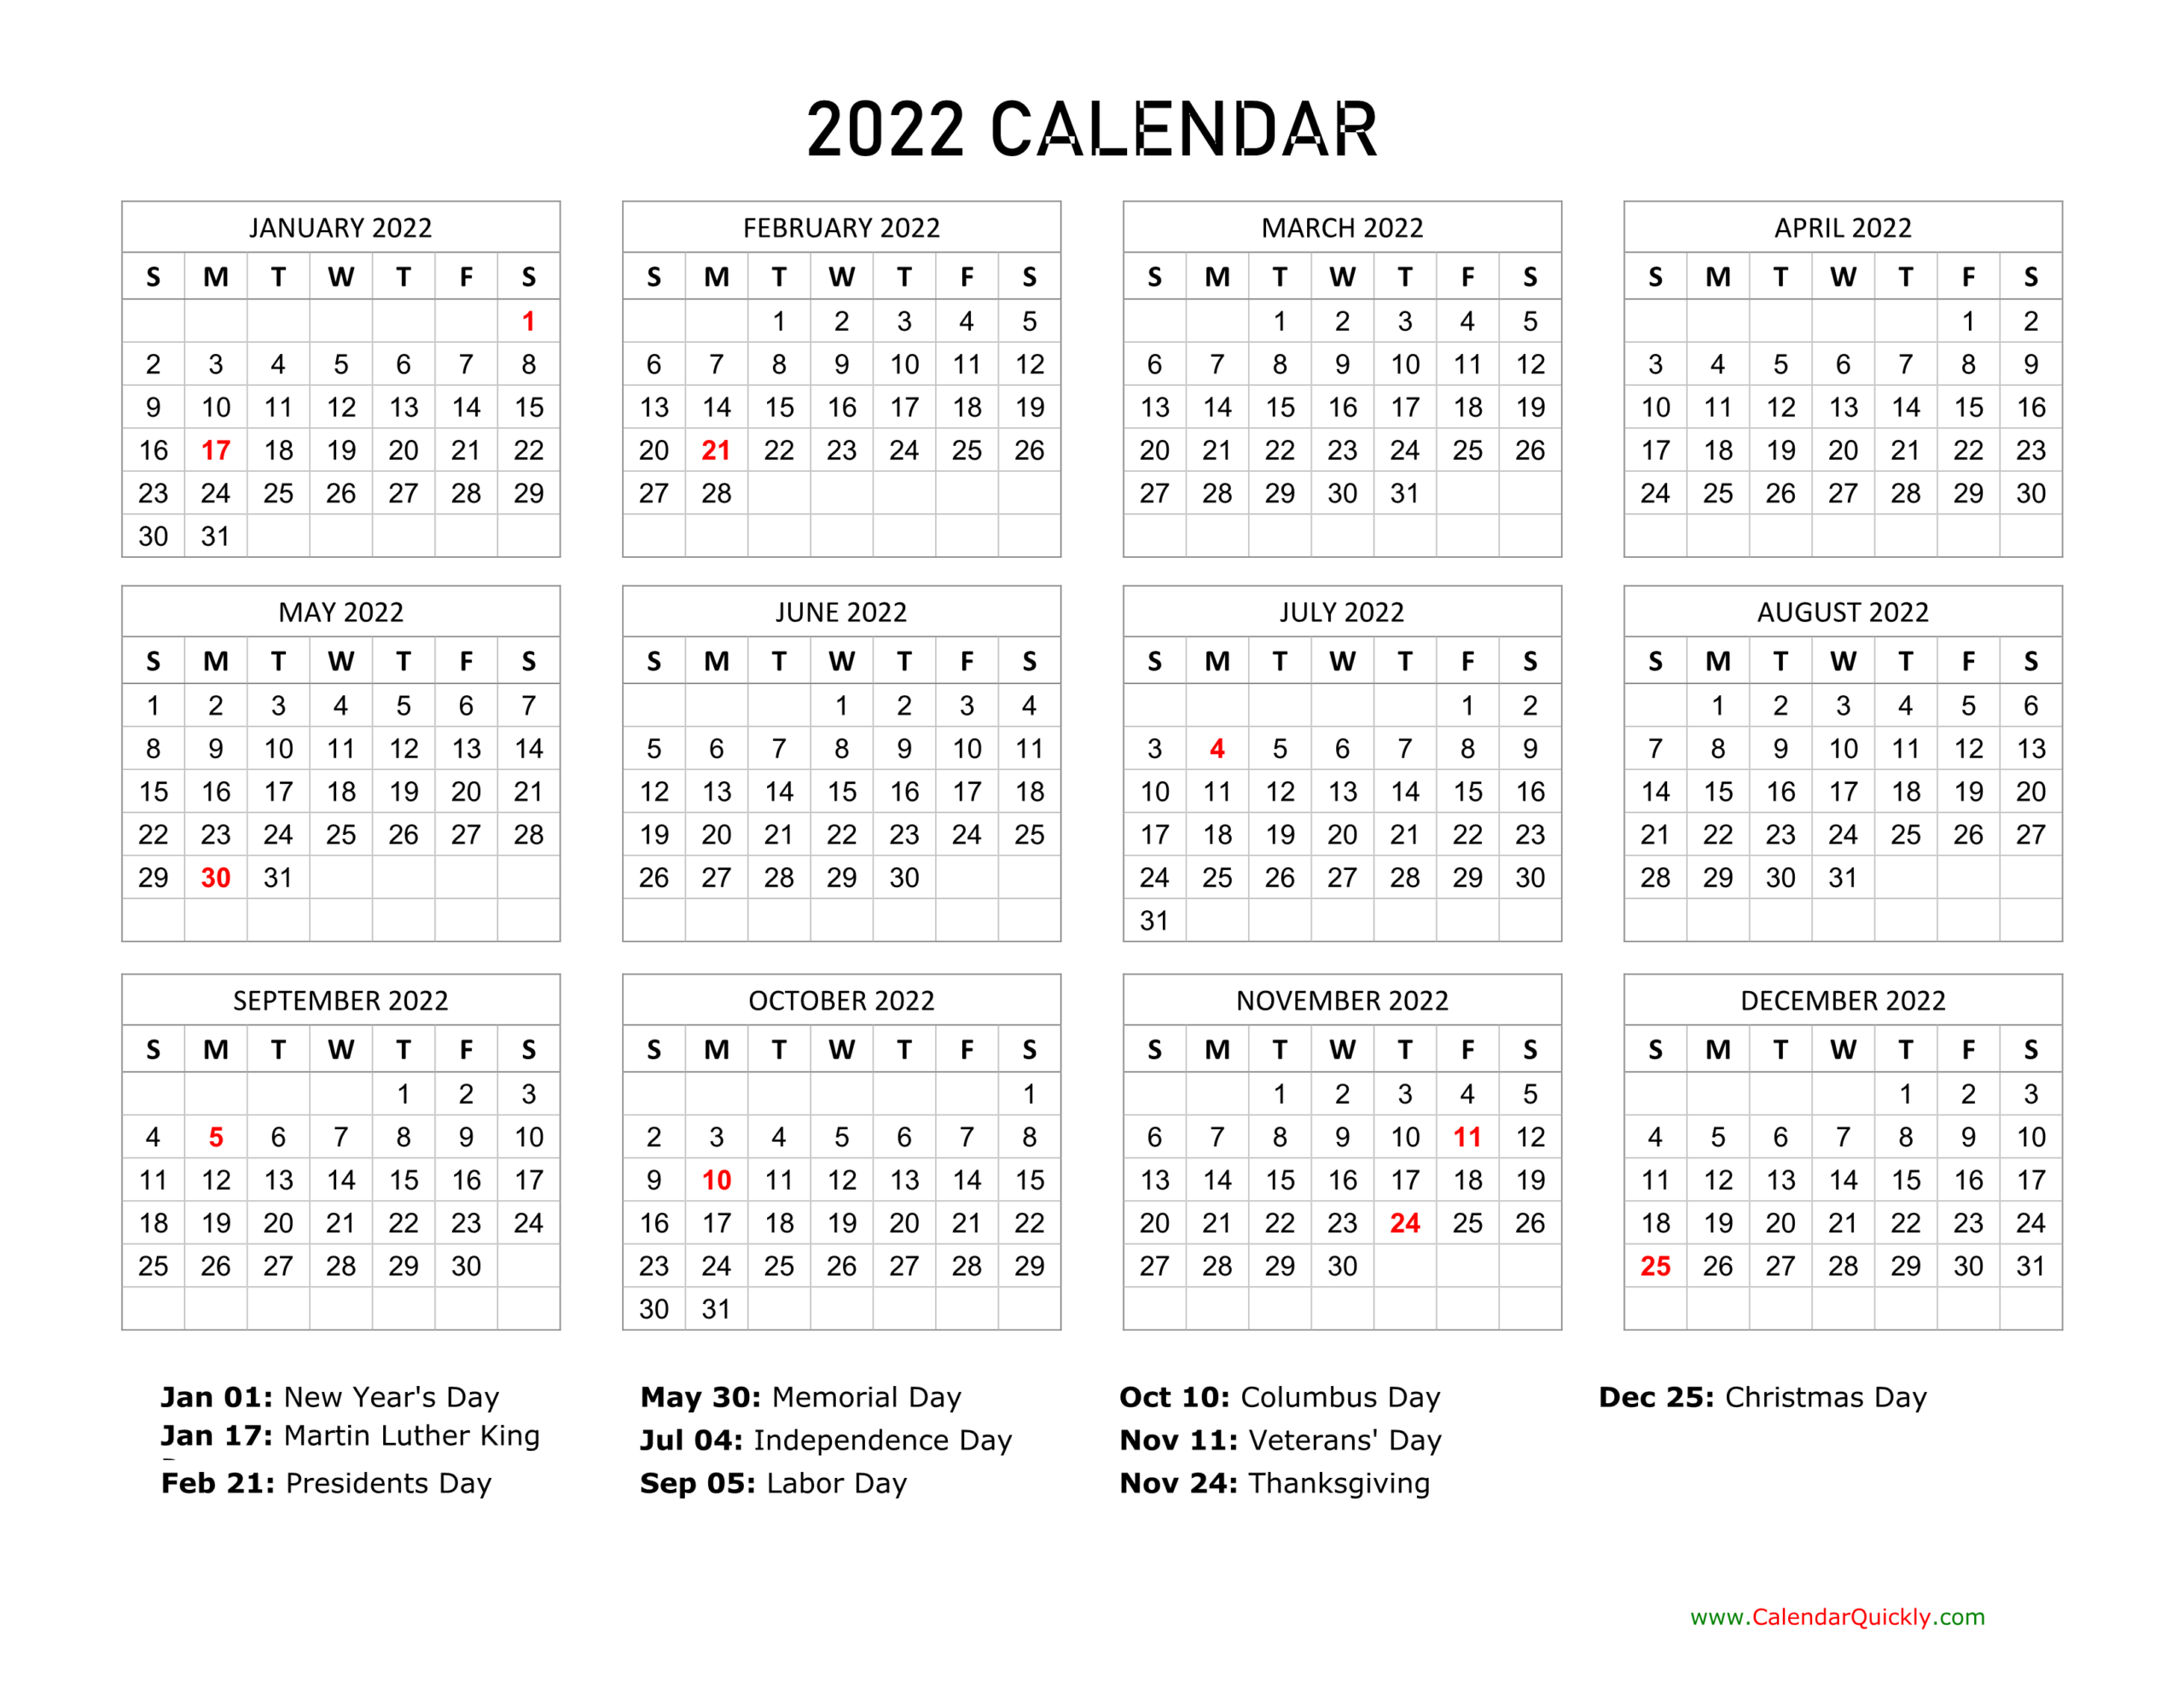 2022 Calendar With Holidays | Calendar Quickly